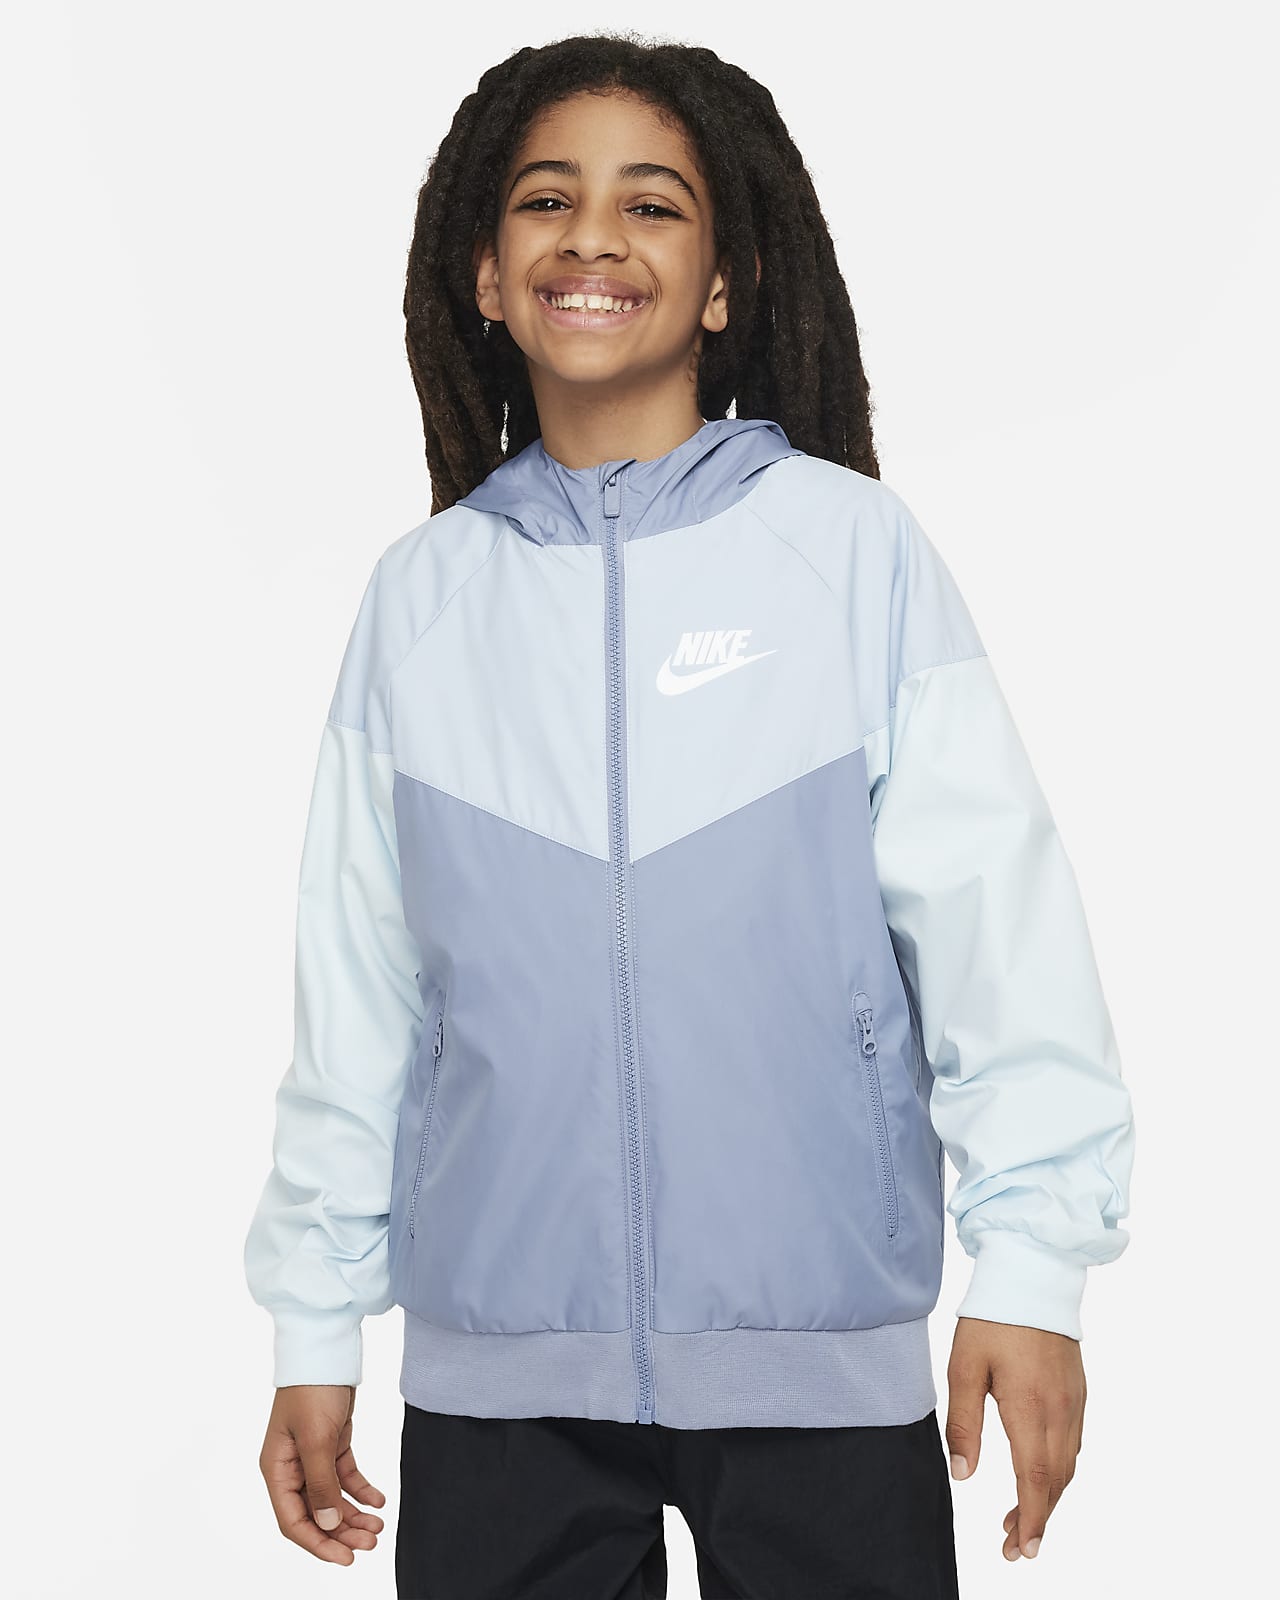 Volná bunda Nike Sportswear Windrunner s kapucí a délkou po boky pro větší děti (chlapce)